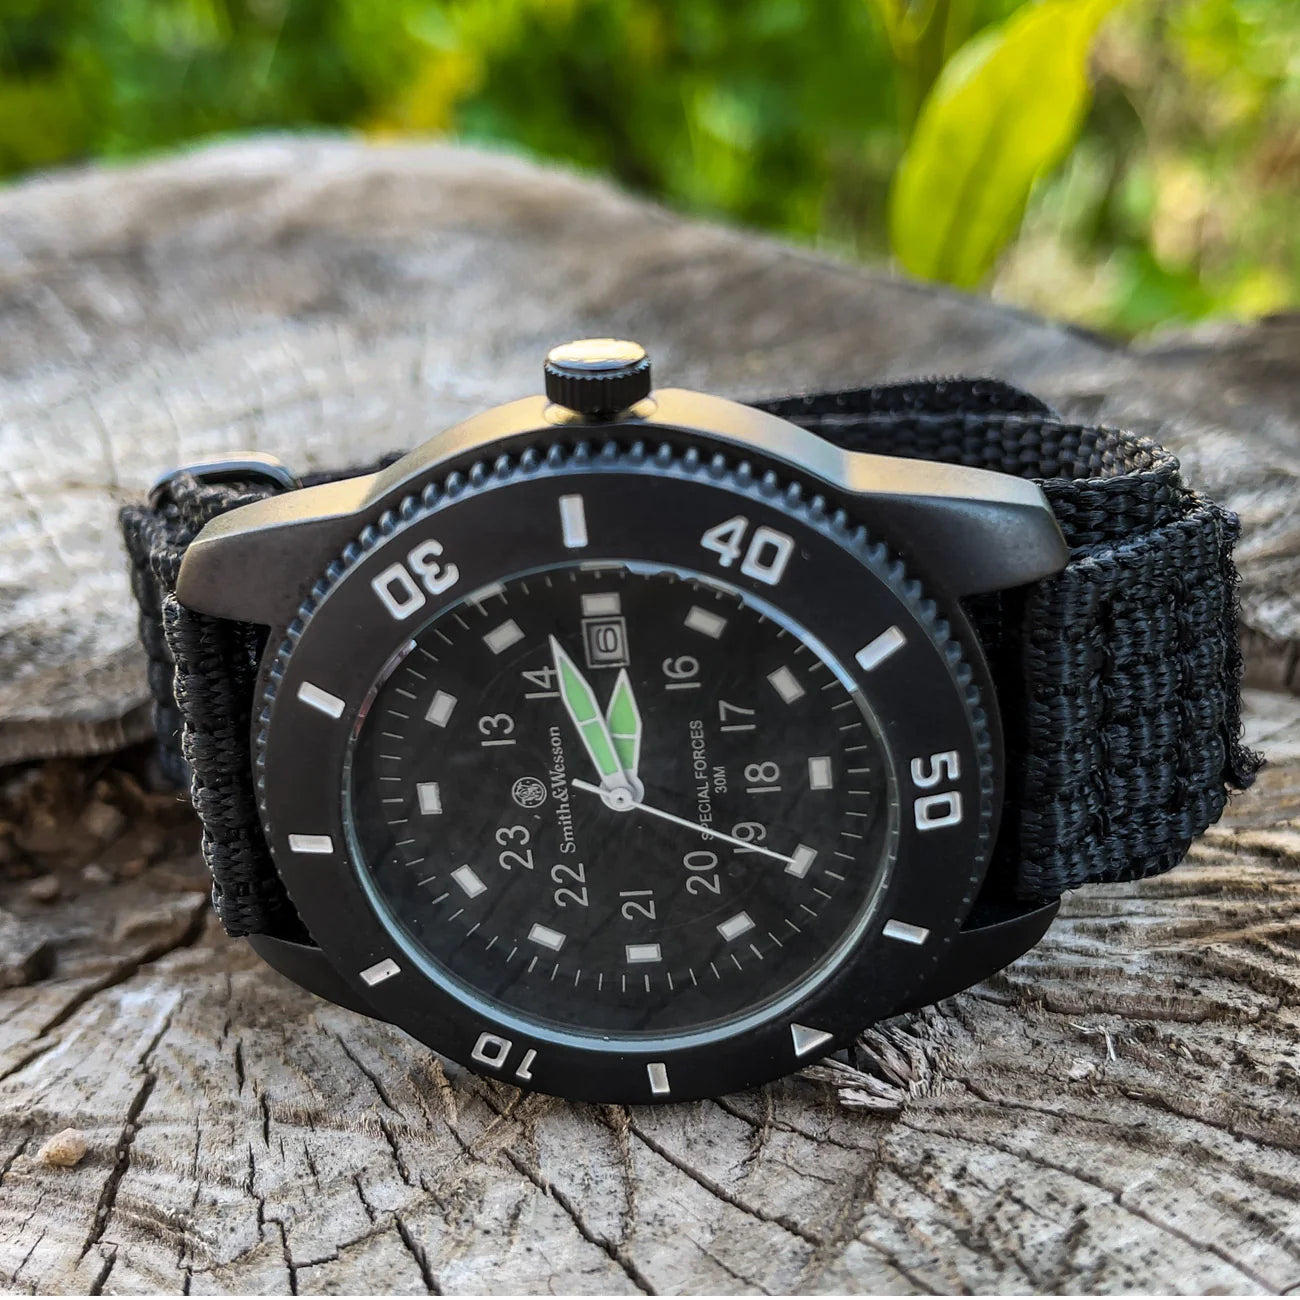 Smith & Wesson Commando Watch w/ Nylon Wristband